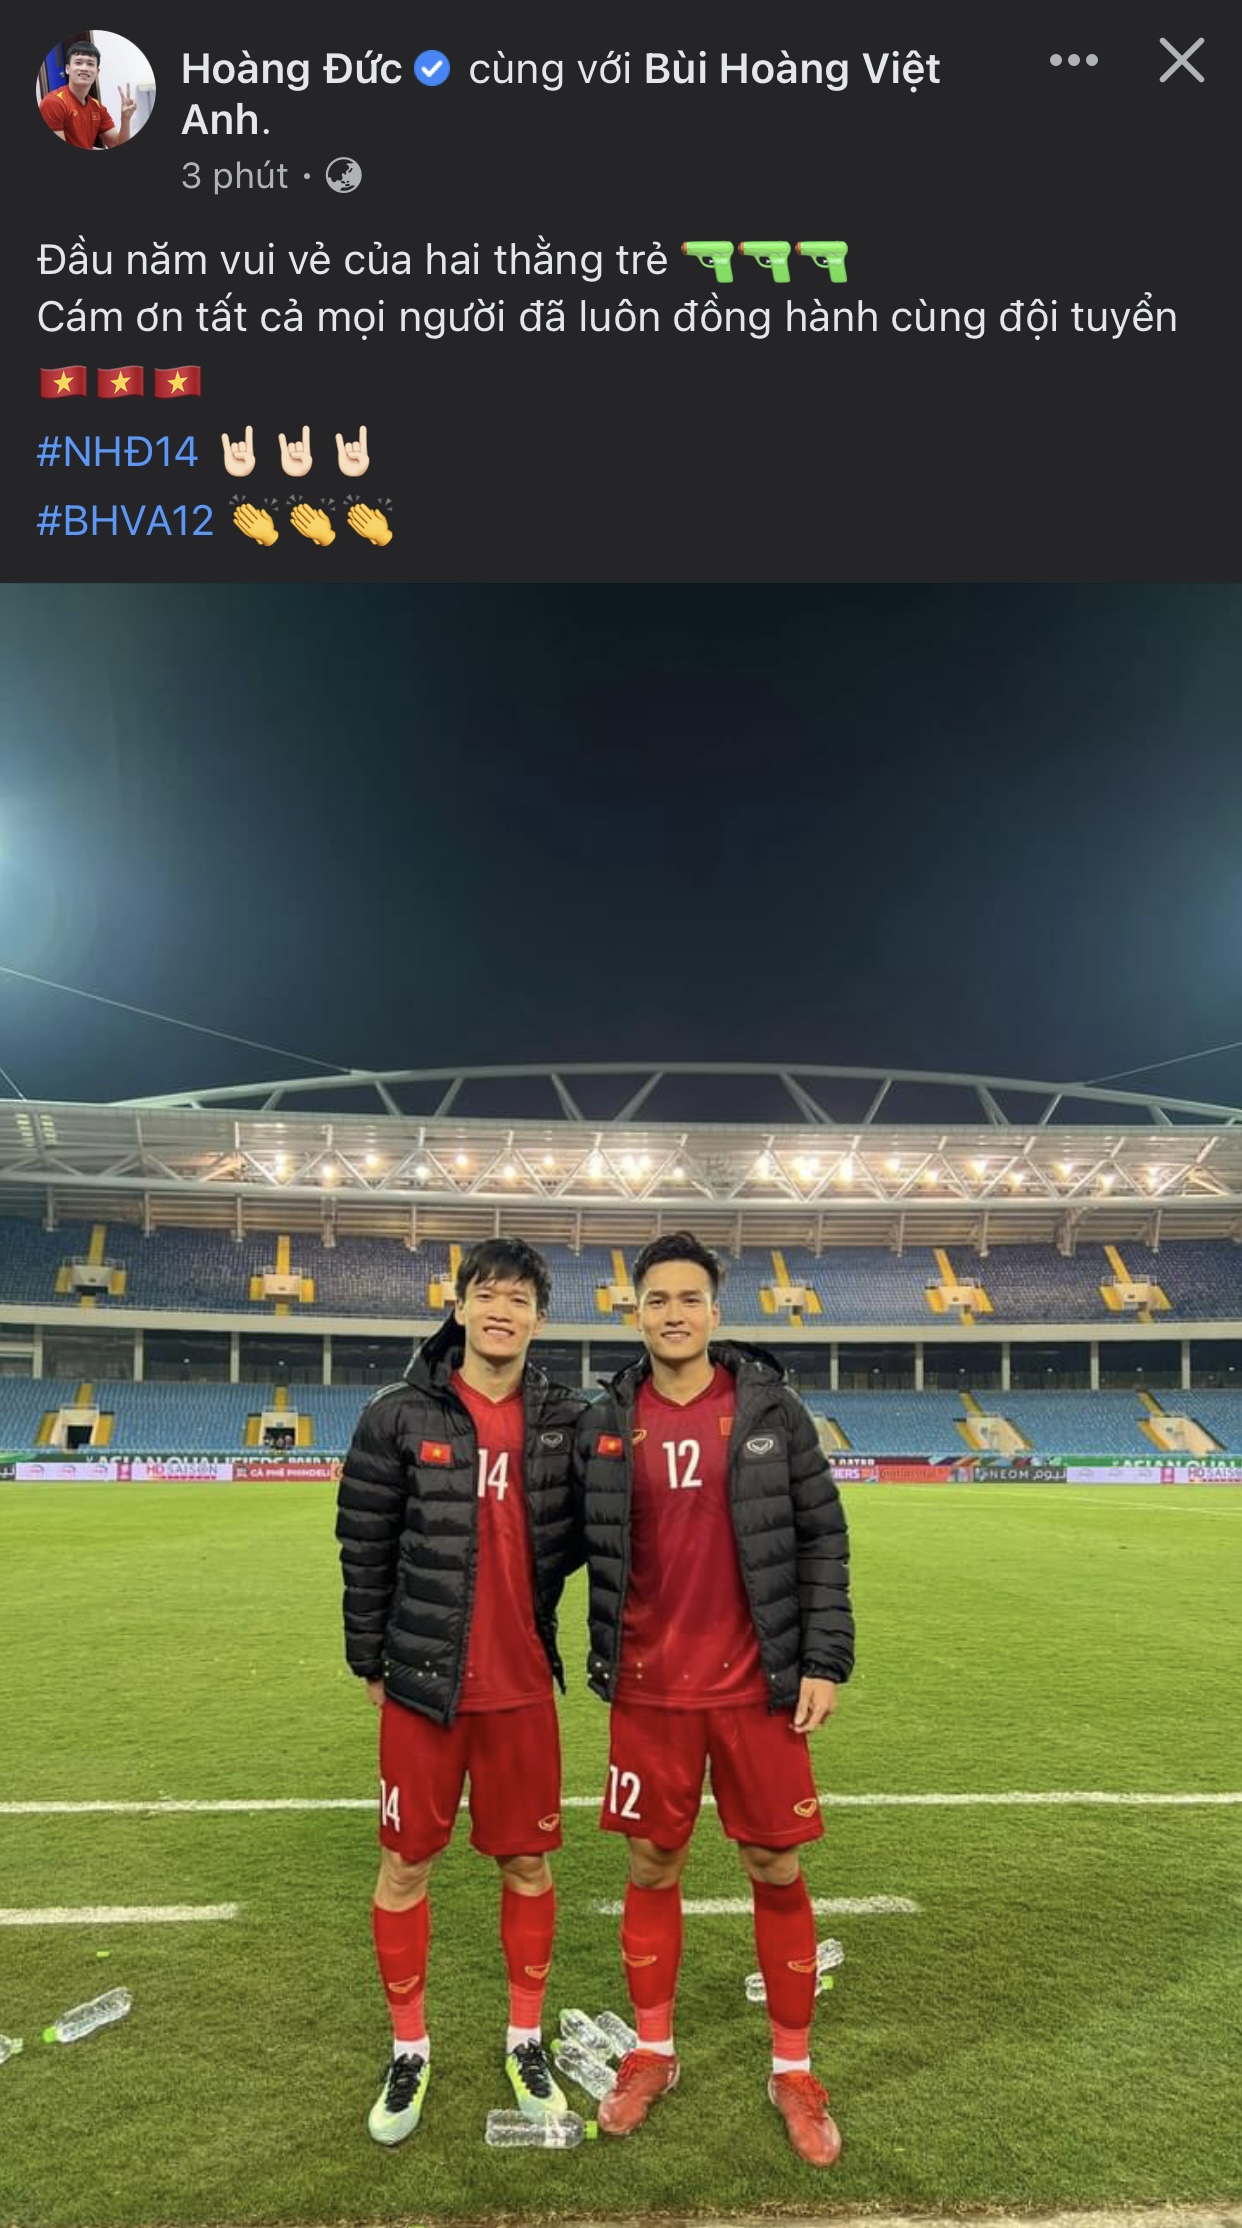 Các cầu thủ ĐT Việt Nam ăn mừng sau khi dành chiến thắng trước Trung Quốc - Ảnh 5.